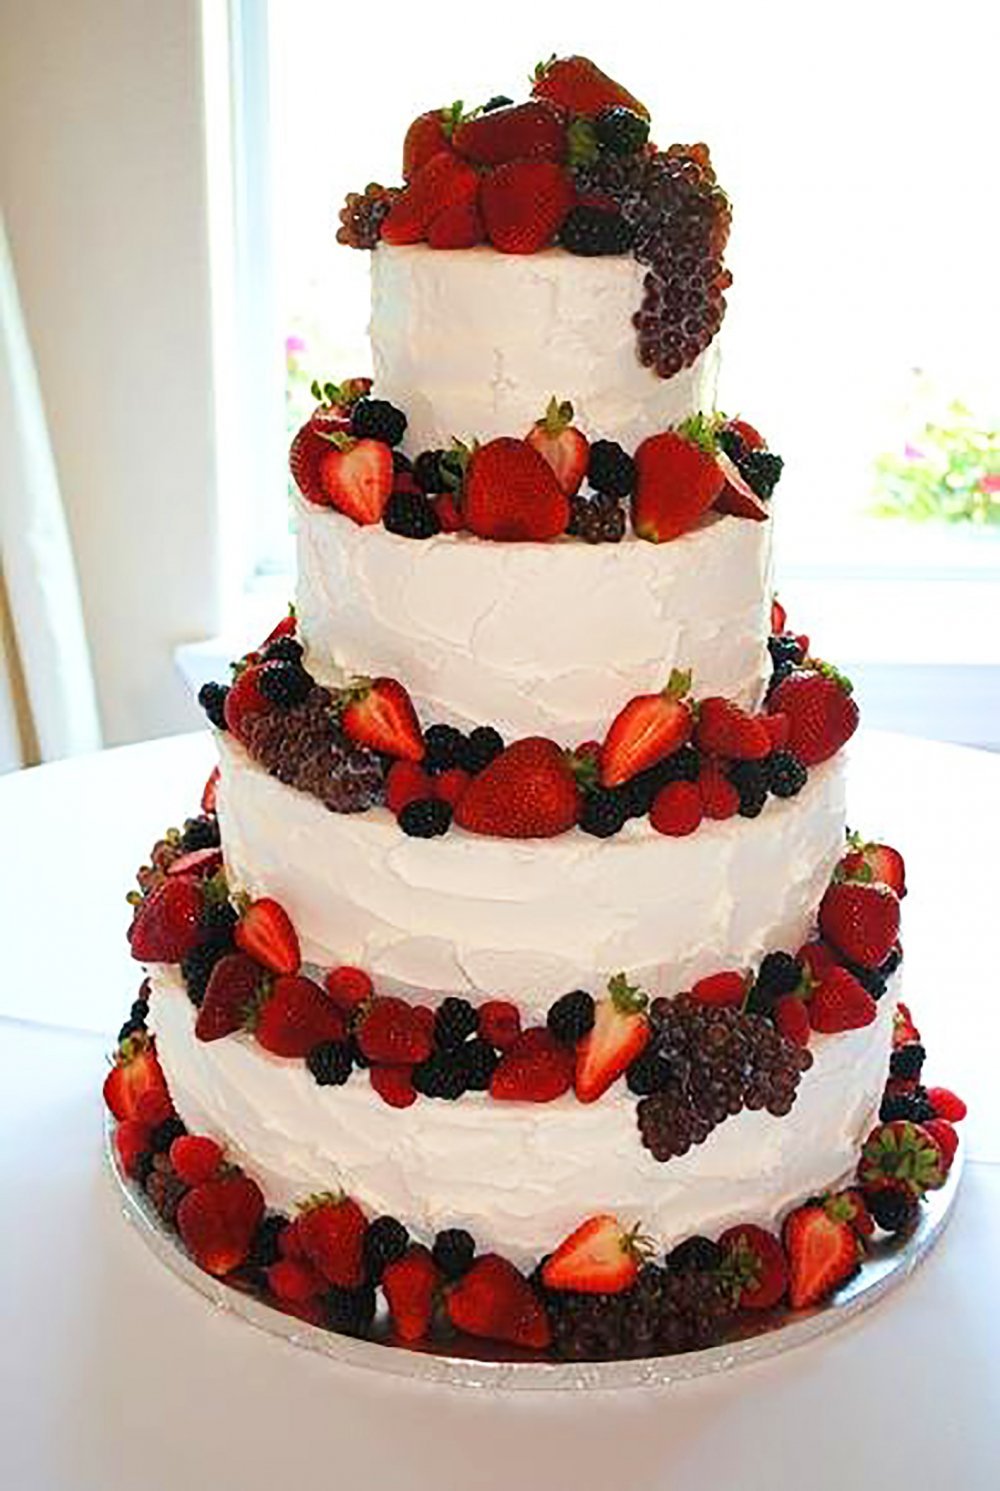 Свадебный торт трехъярусный